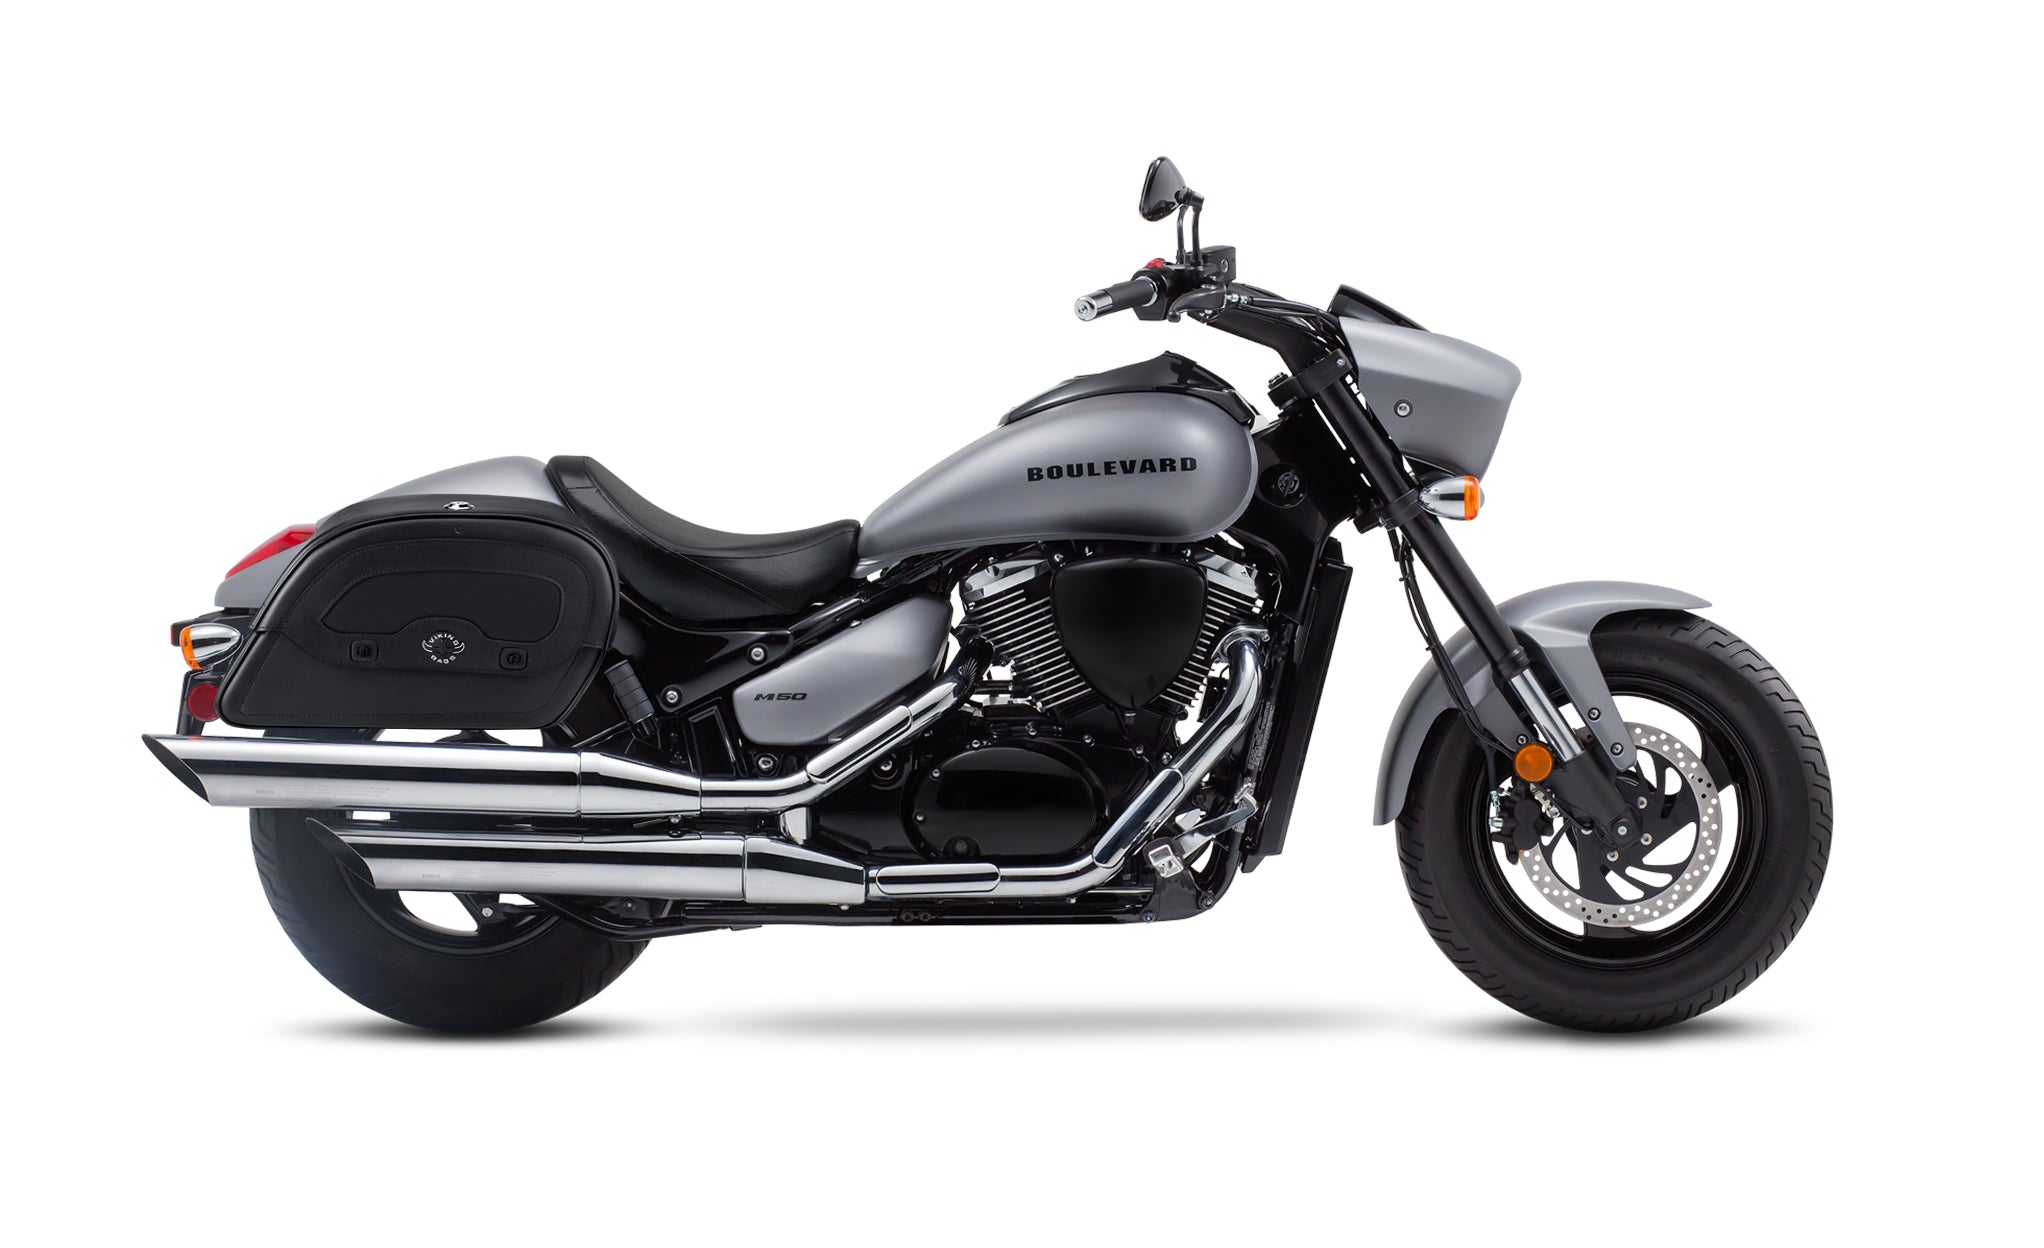 Viking Warrior Large Suzuki Boulevard M50 Vz800 Leather Motorcycle Saddlebags on Bike Photo @expand